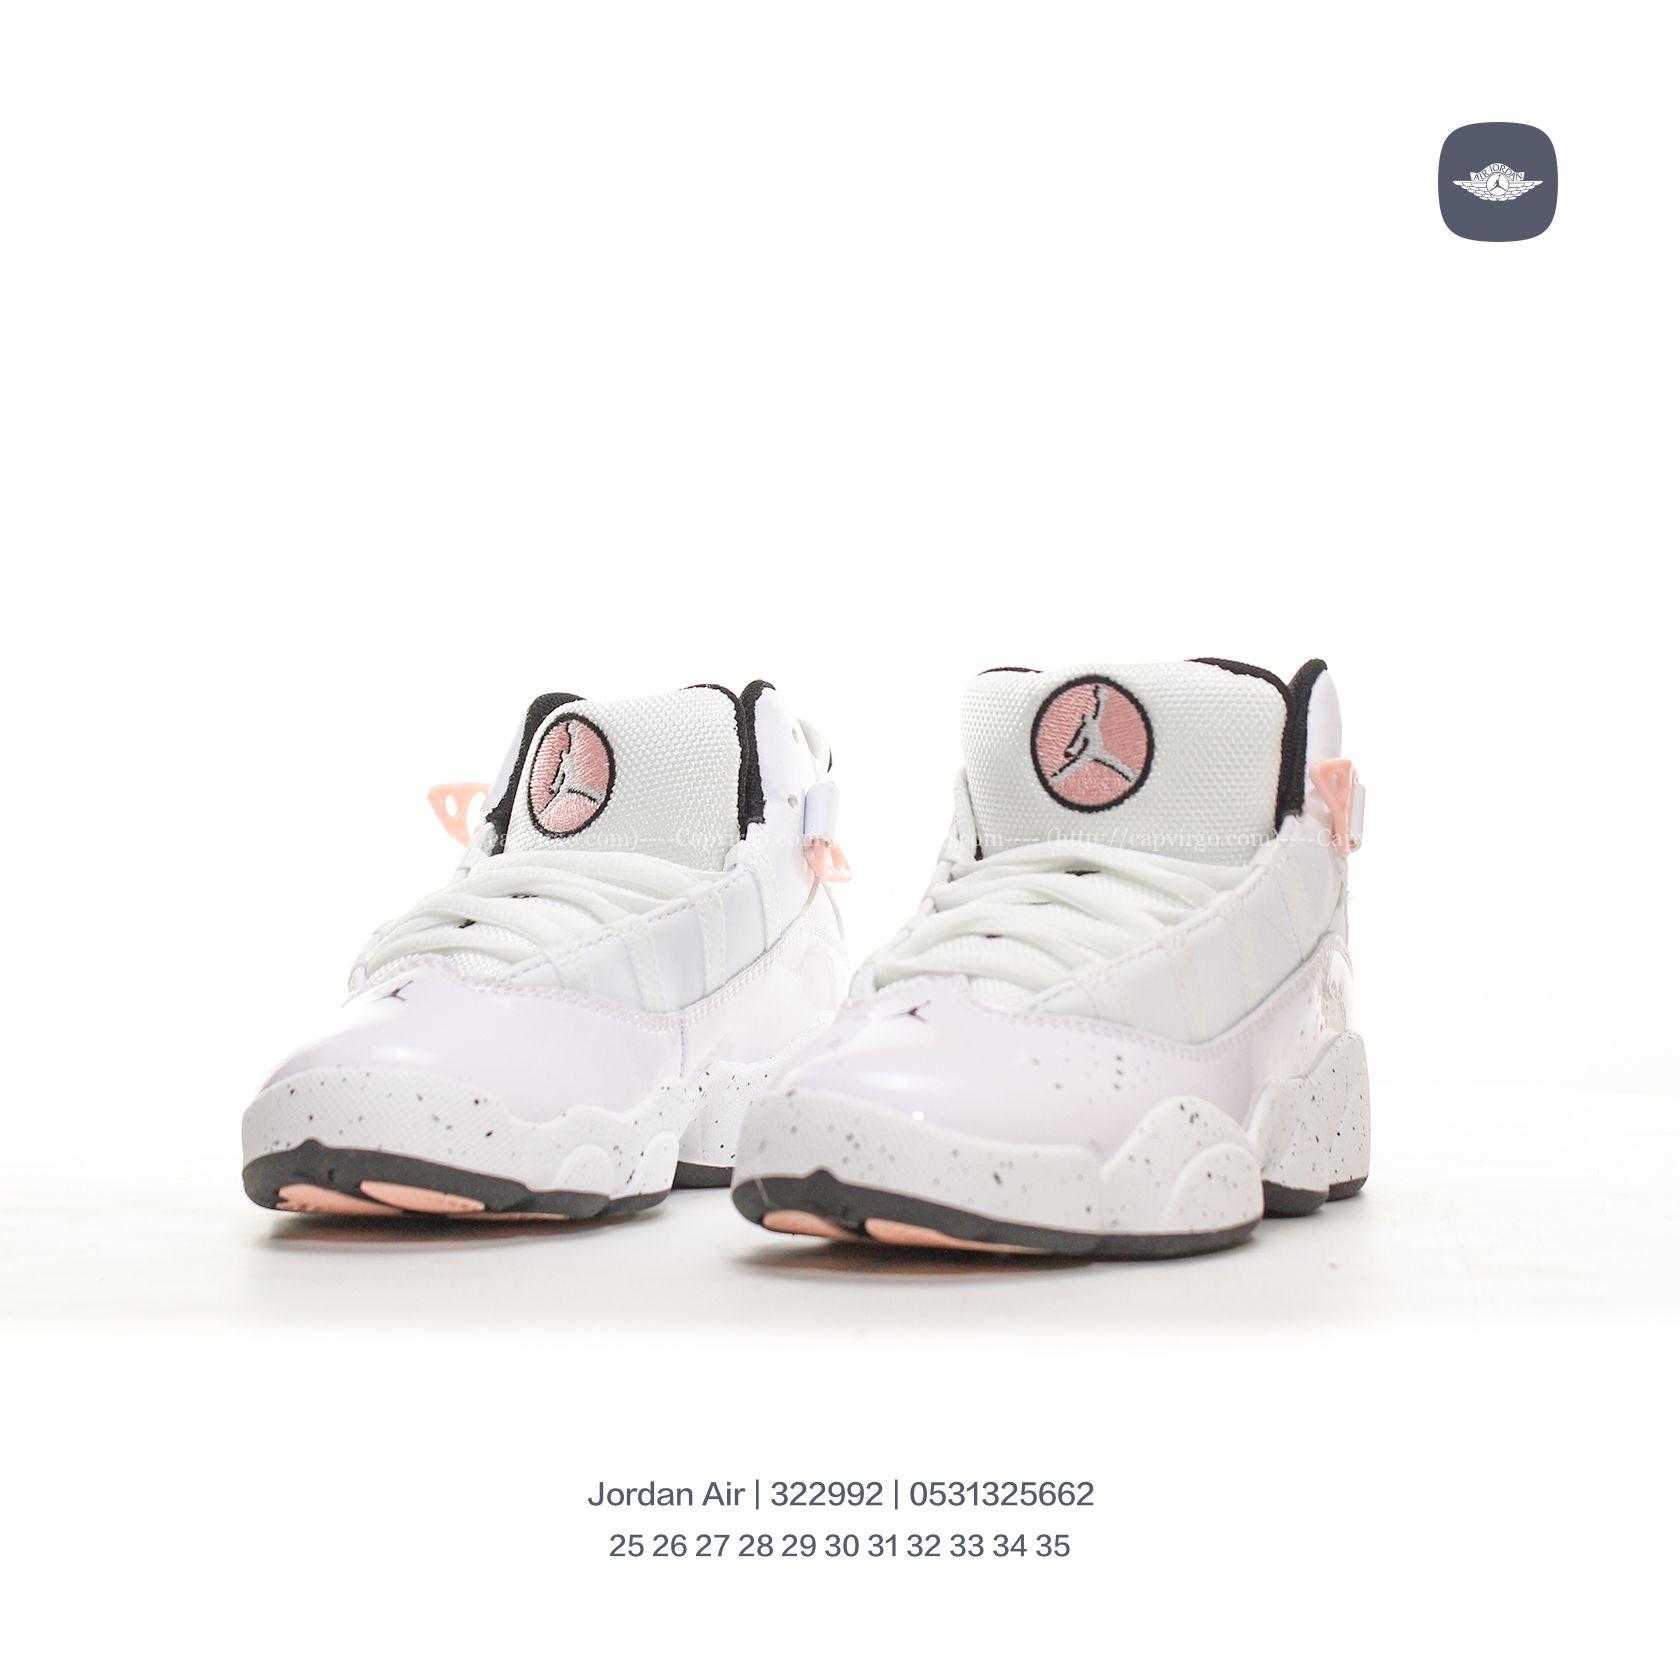 Giày Air Jordan 6 Rings Concord XI trẻ em màu trắng